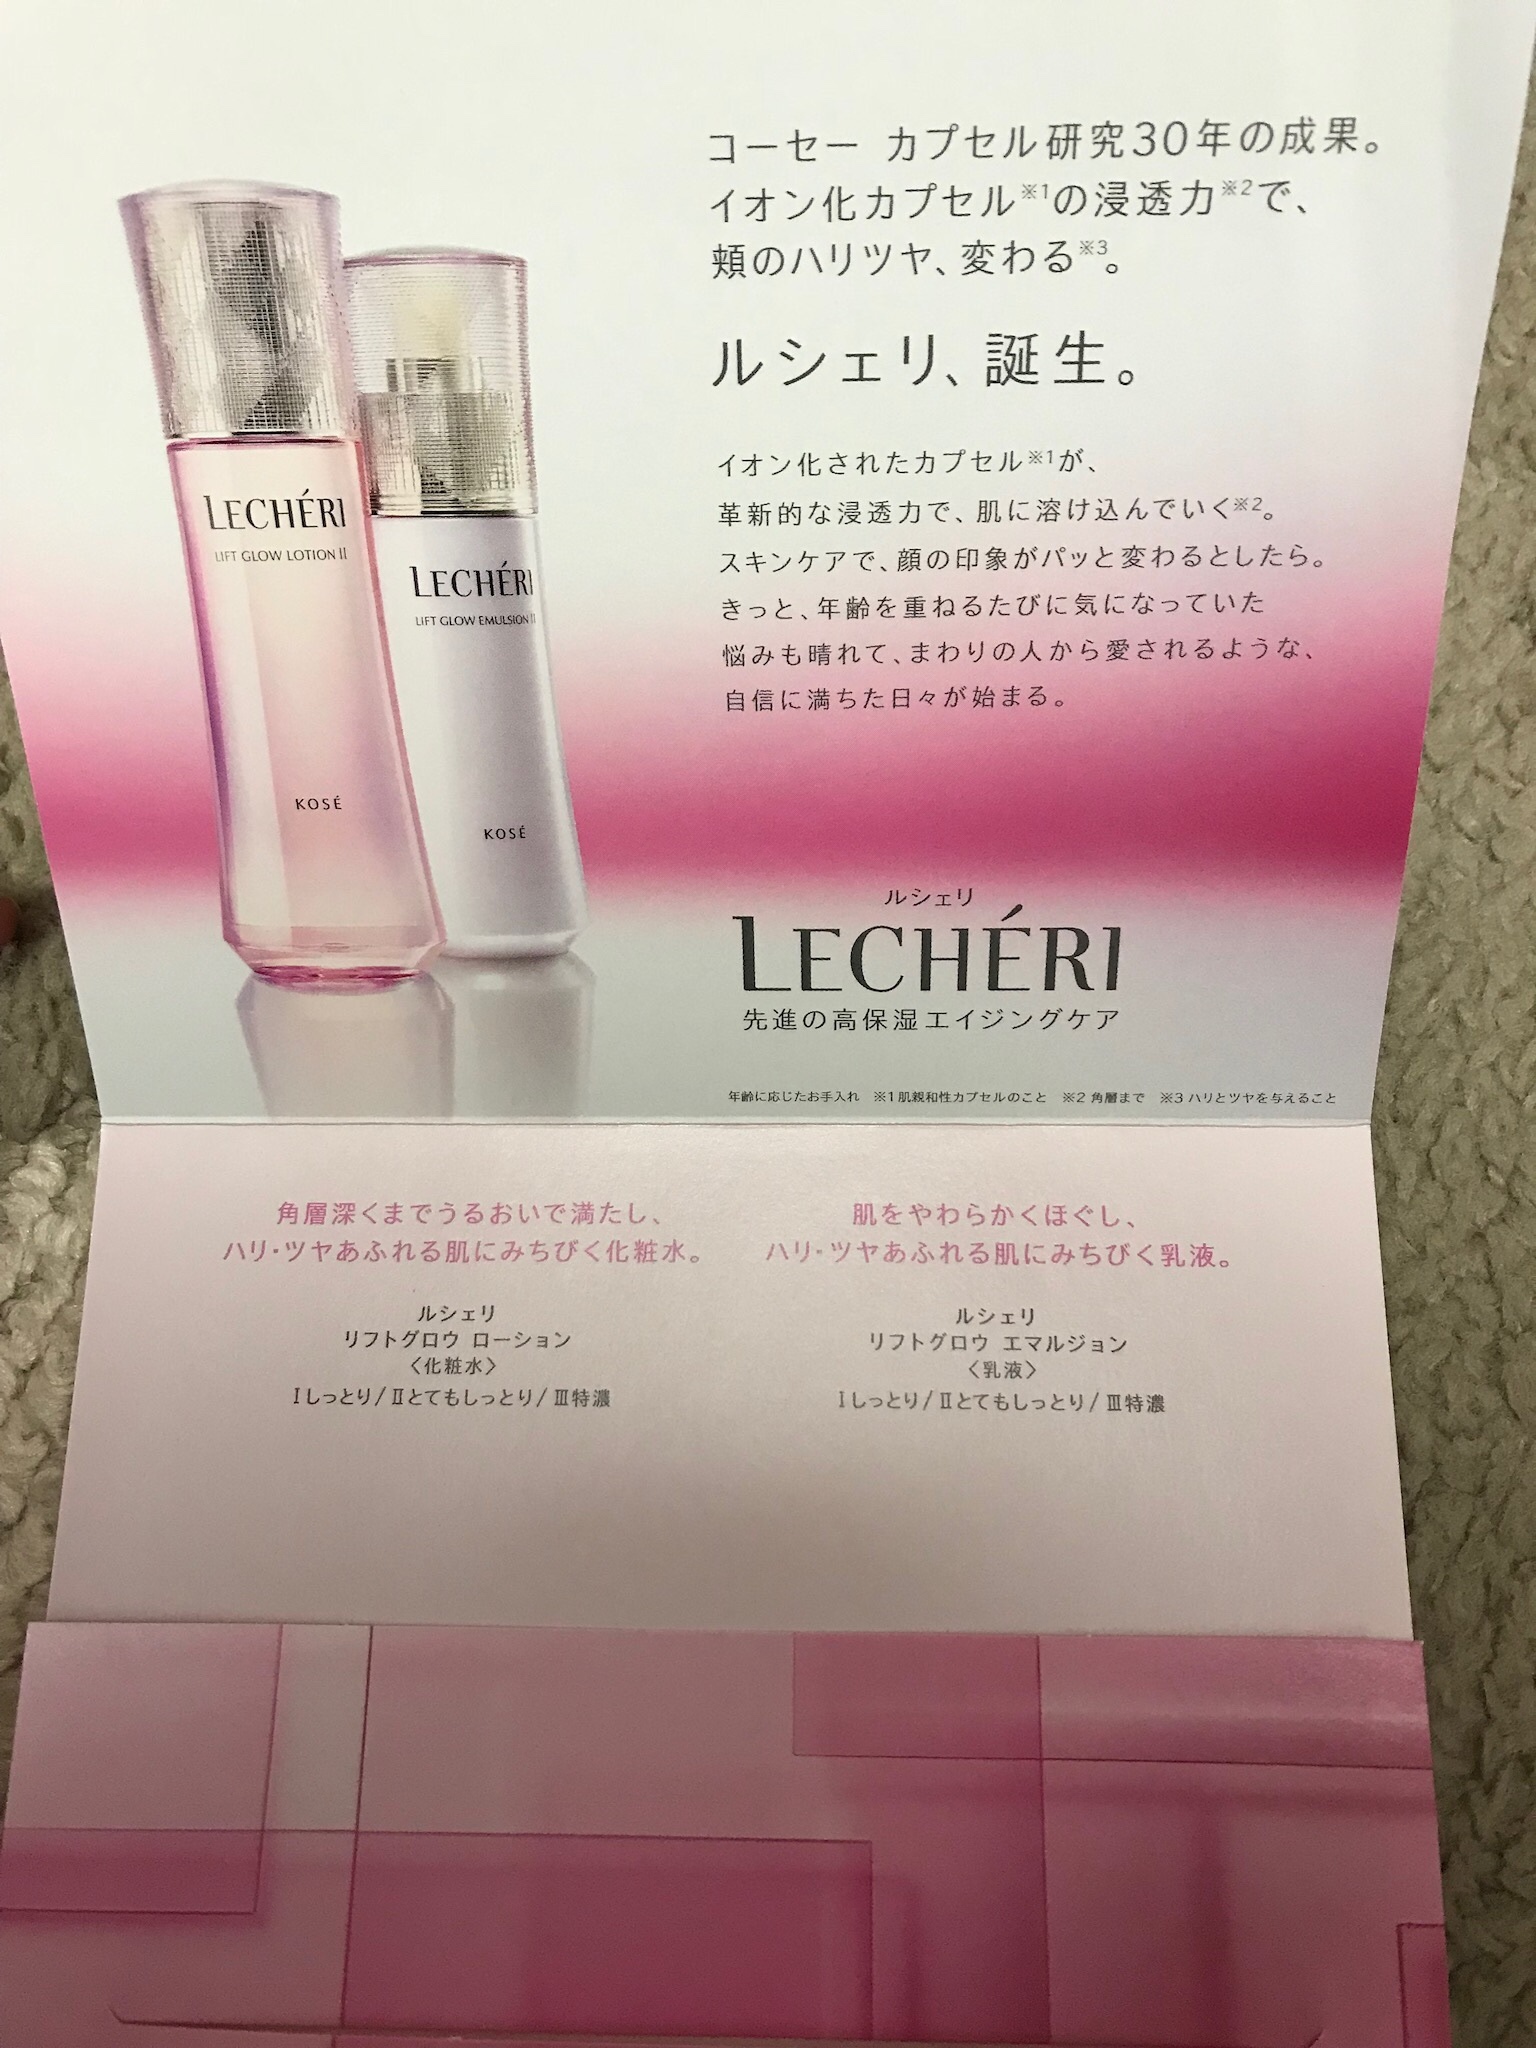 中古 KOSE ルシェリ リフトグロウ 化粧水と乳液のセット enelmedio.tv